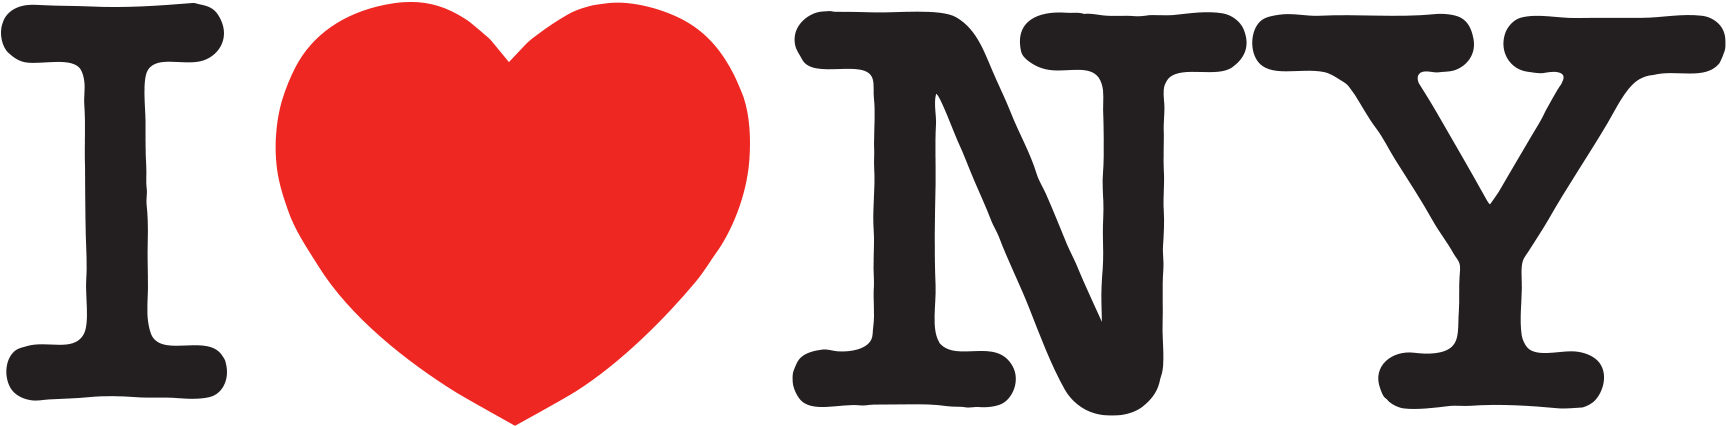 I Love New York Logo - Milton Glaser (2268x1688)